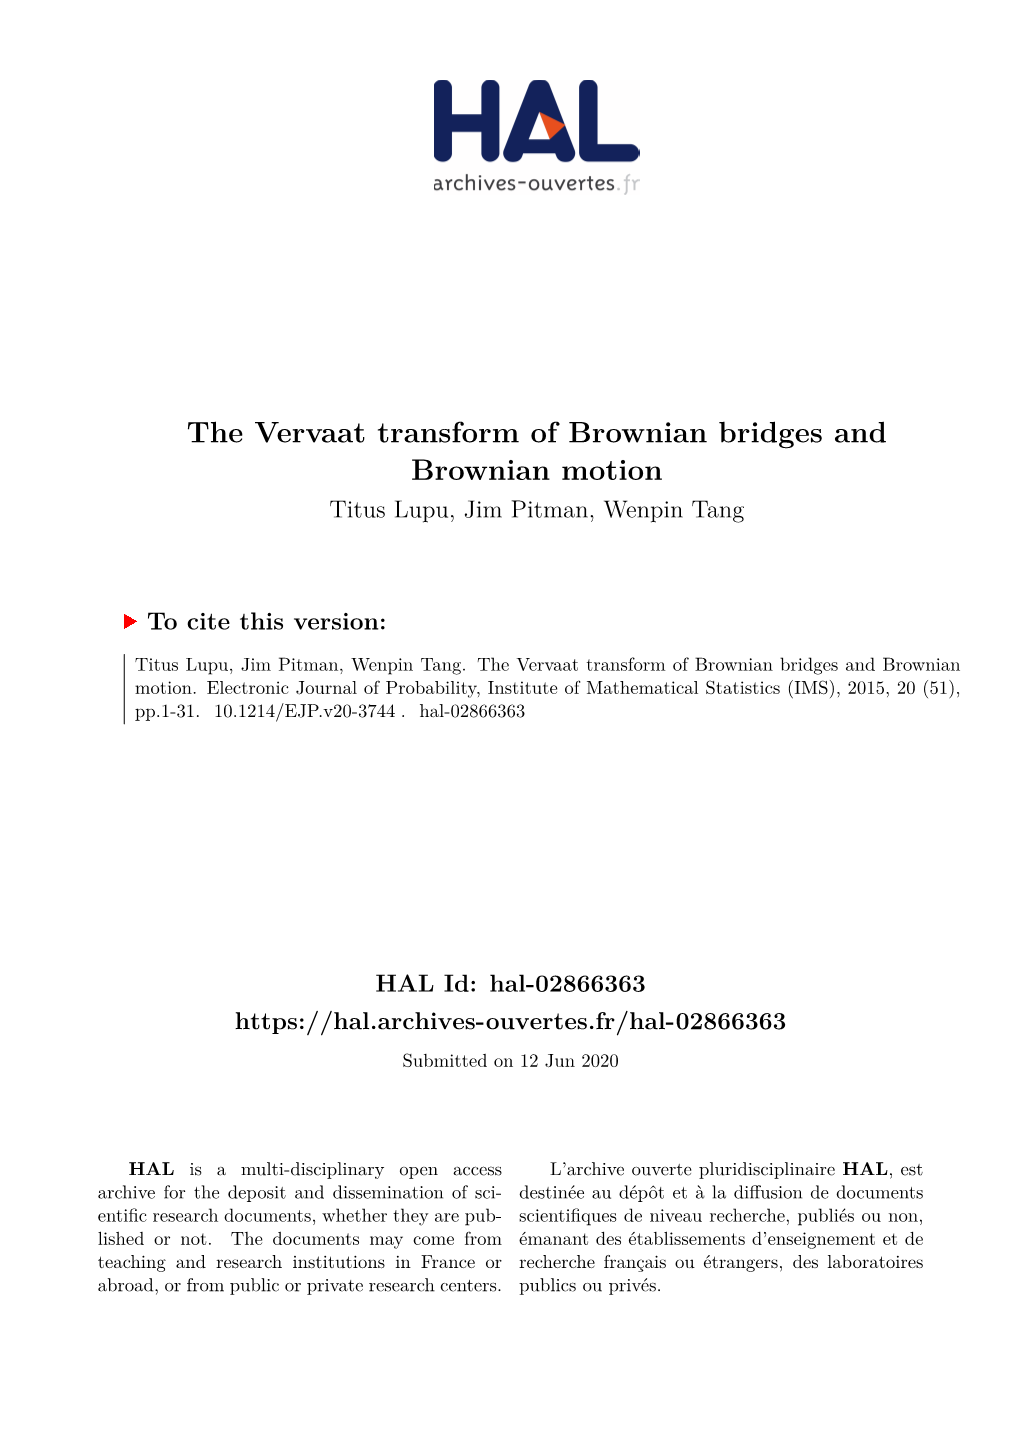 The Vervaat Transform of Brownian Bridges and Brownian Motion Titus Lupu, Jim Pitman, Wenpin Tang